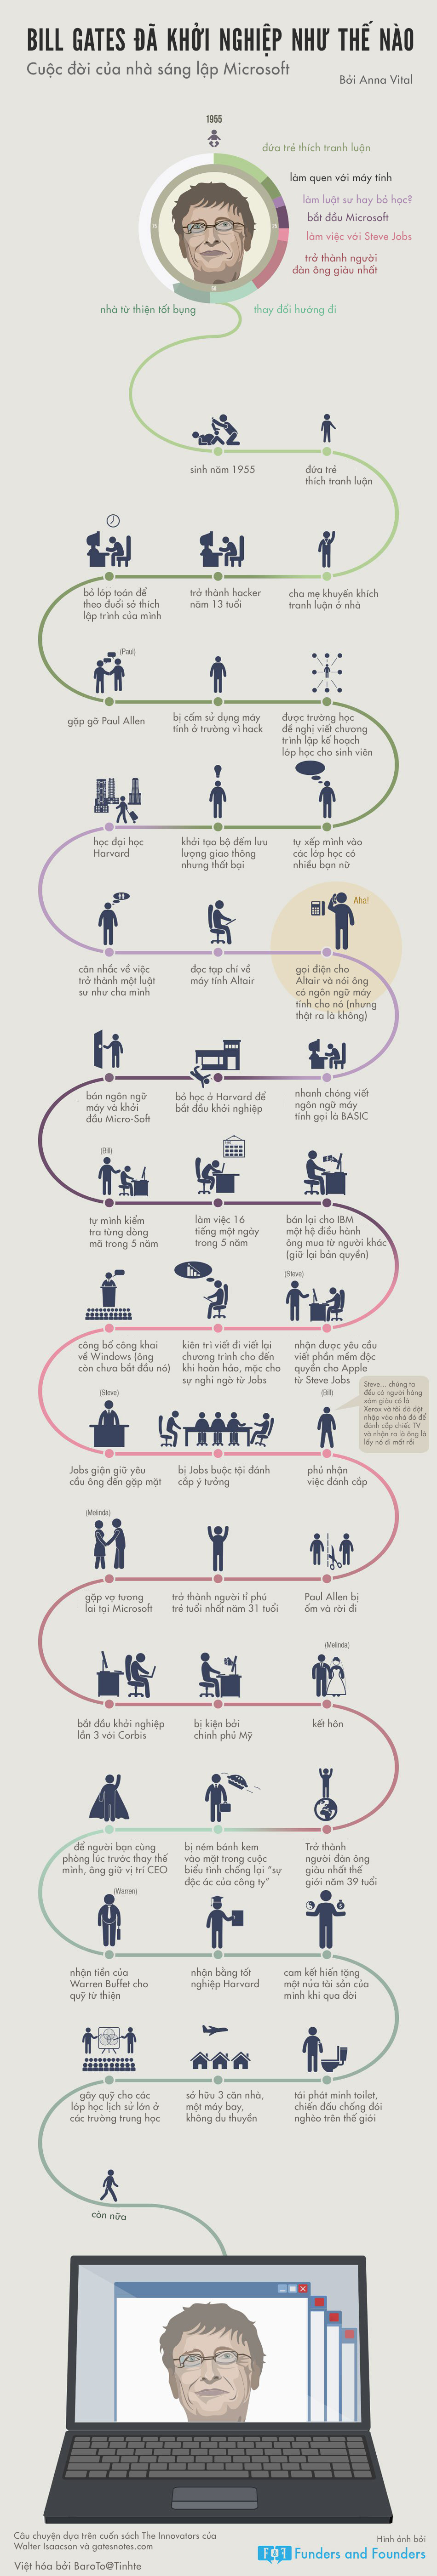 [Infographic] Cuộc đời khởi nghiệp của Bill Gates 8